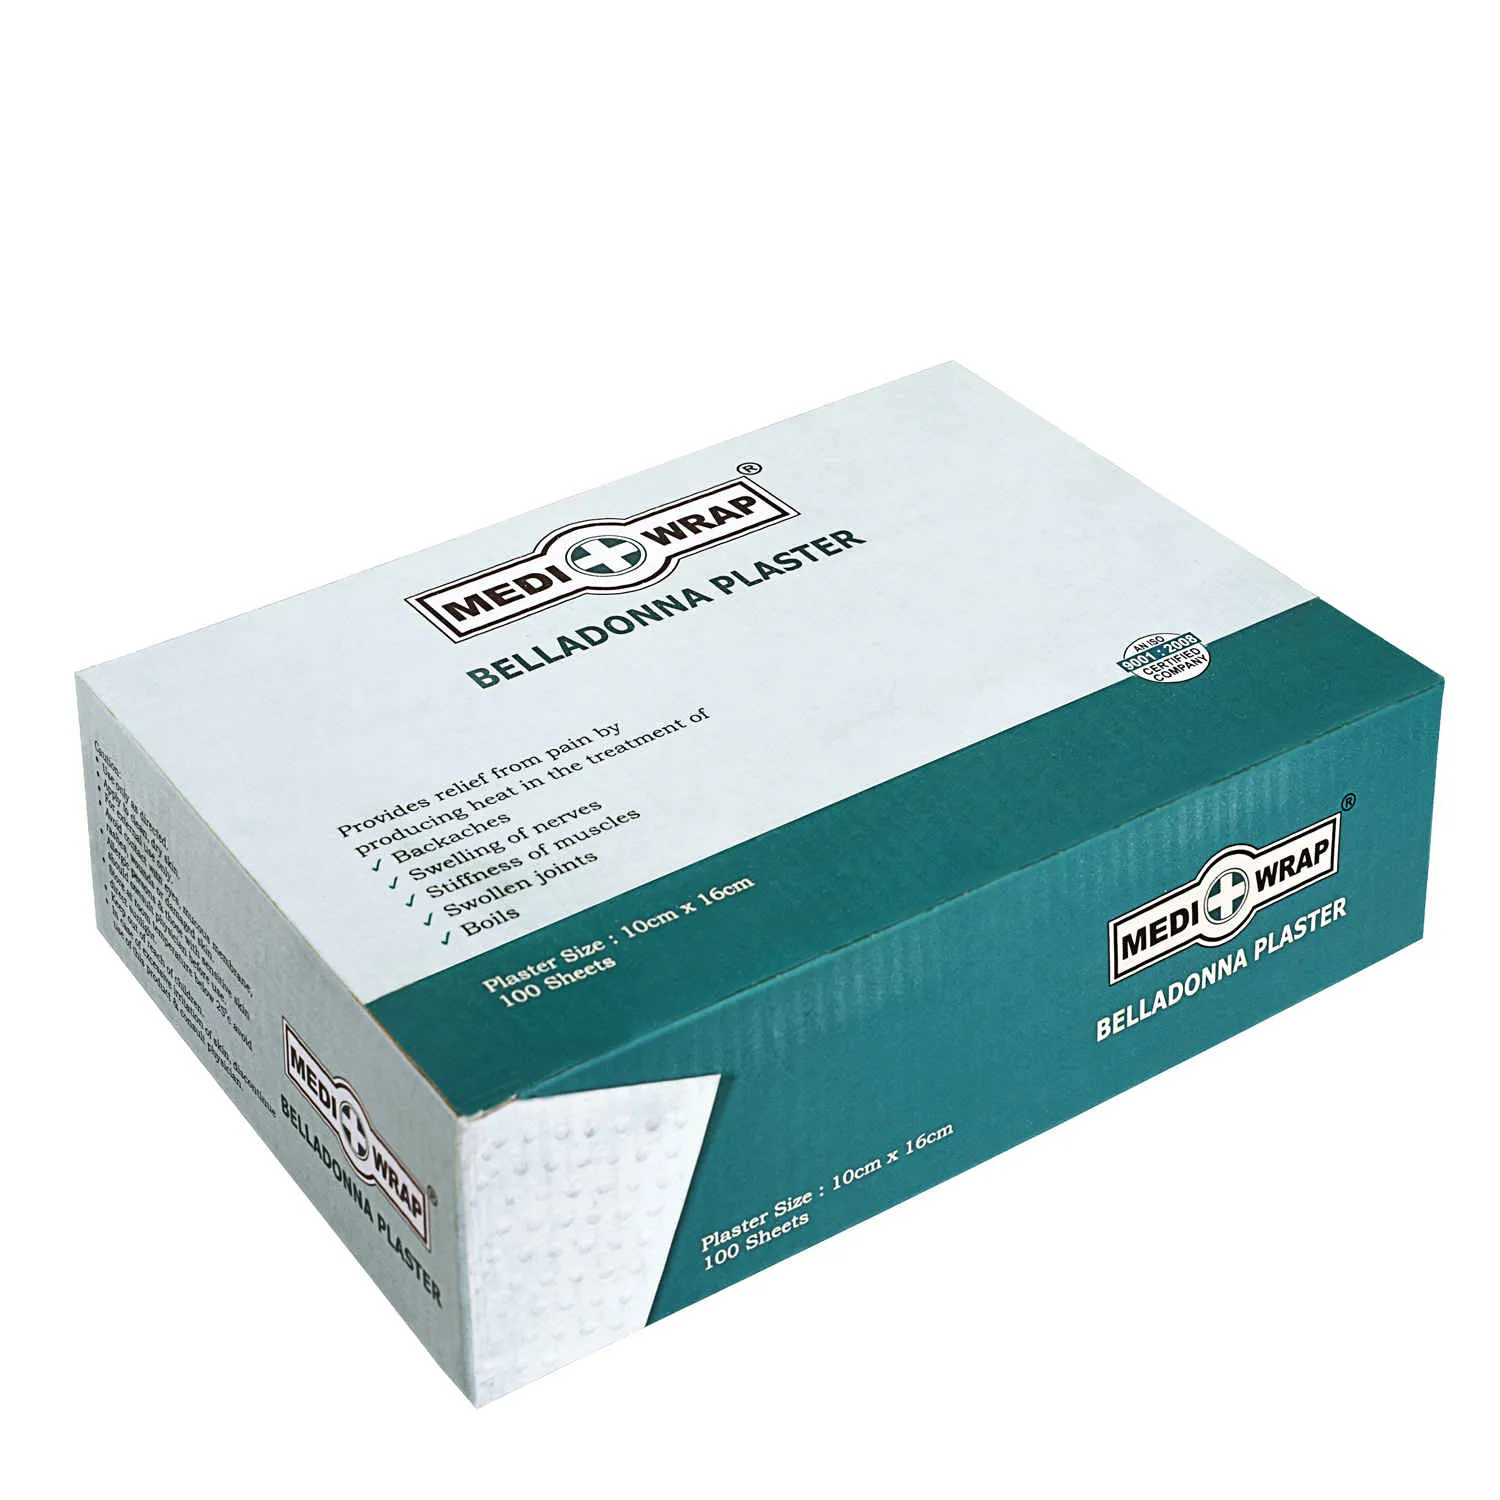 Medigrip Belladonna Plaster 10CM X 16CM-10 SHEETS